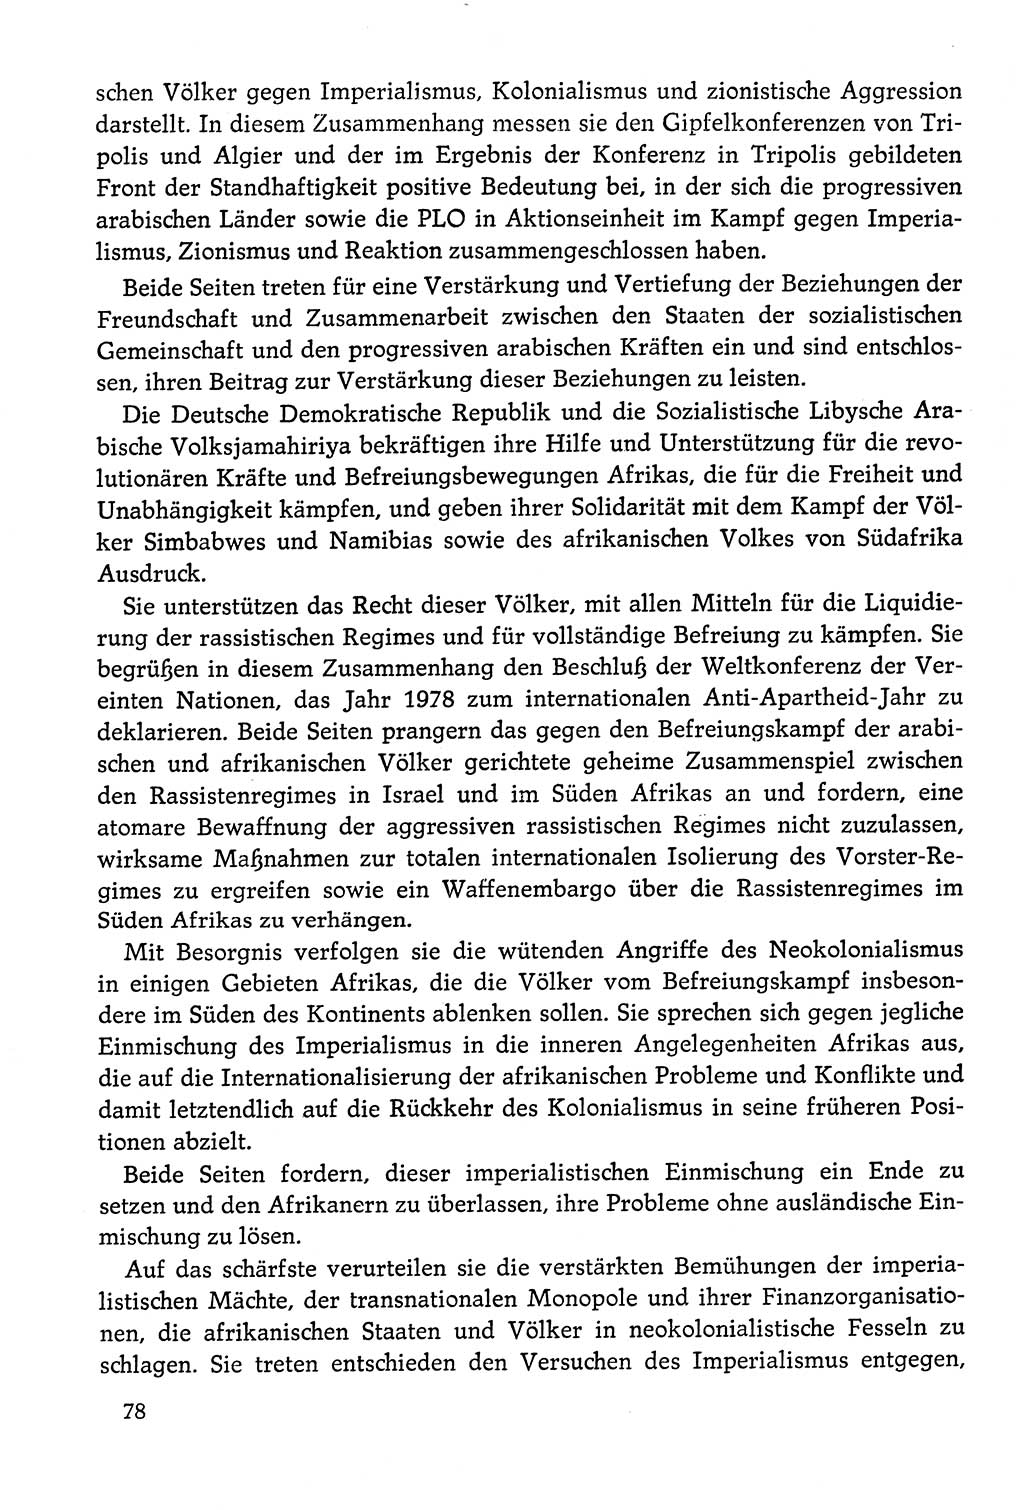 Dokumente der Sozialistischen Einheitspartei Deutschlands (SED) [Deutsche Demokratische Republik (DDR)] 1978-1979, Seite 78 (Dok. SED DDR 1978-1979, S. 78)